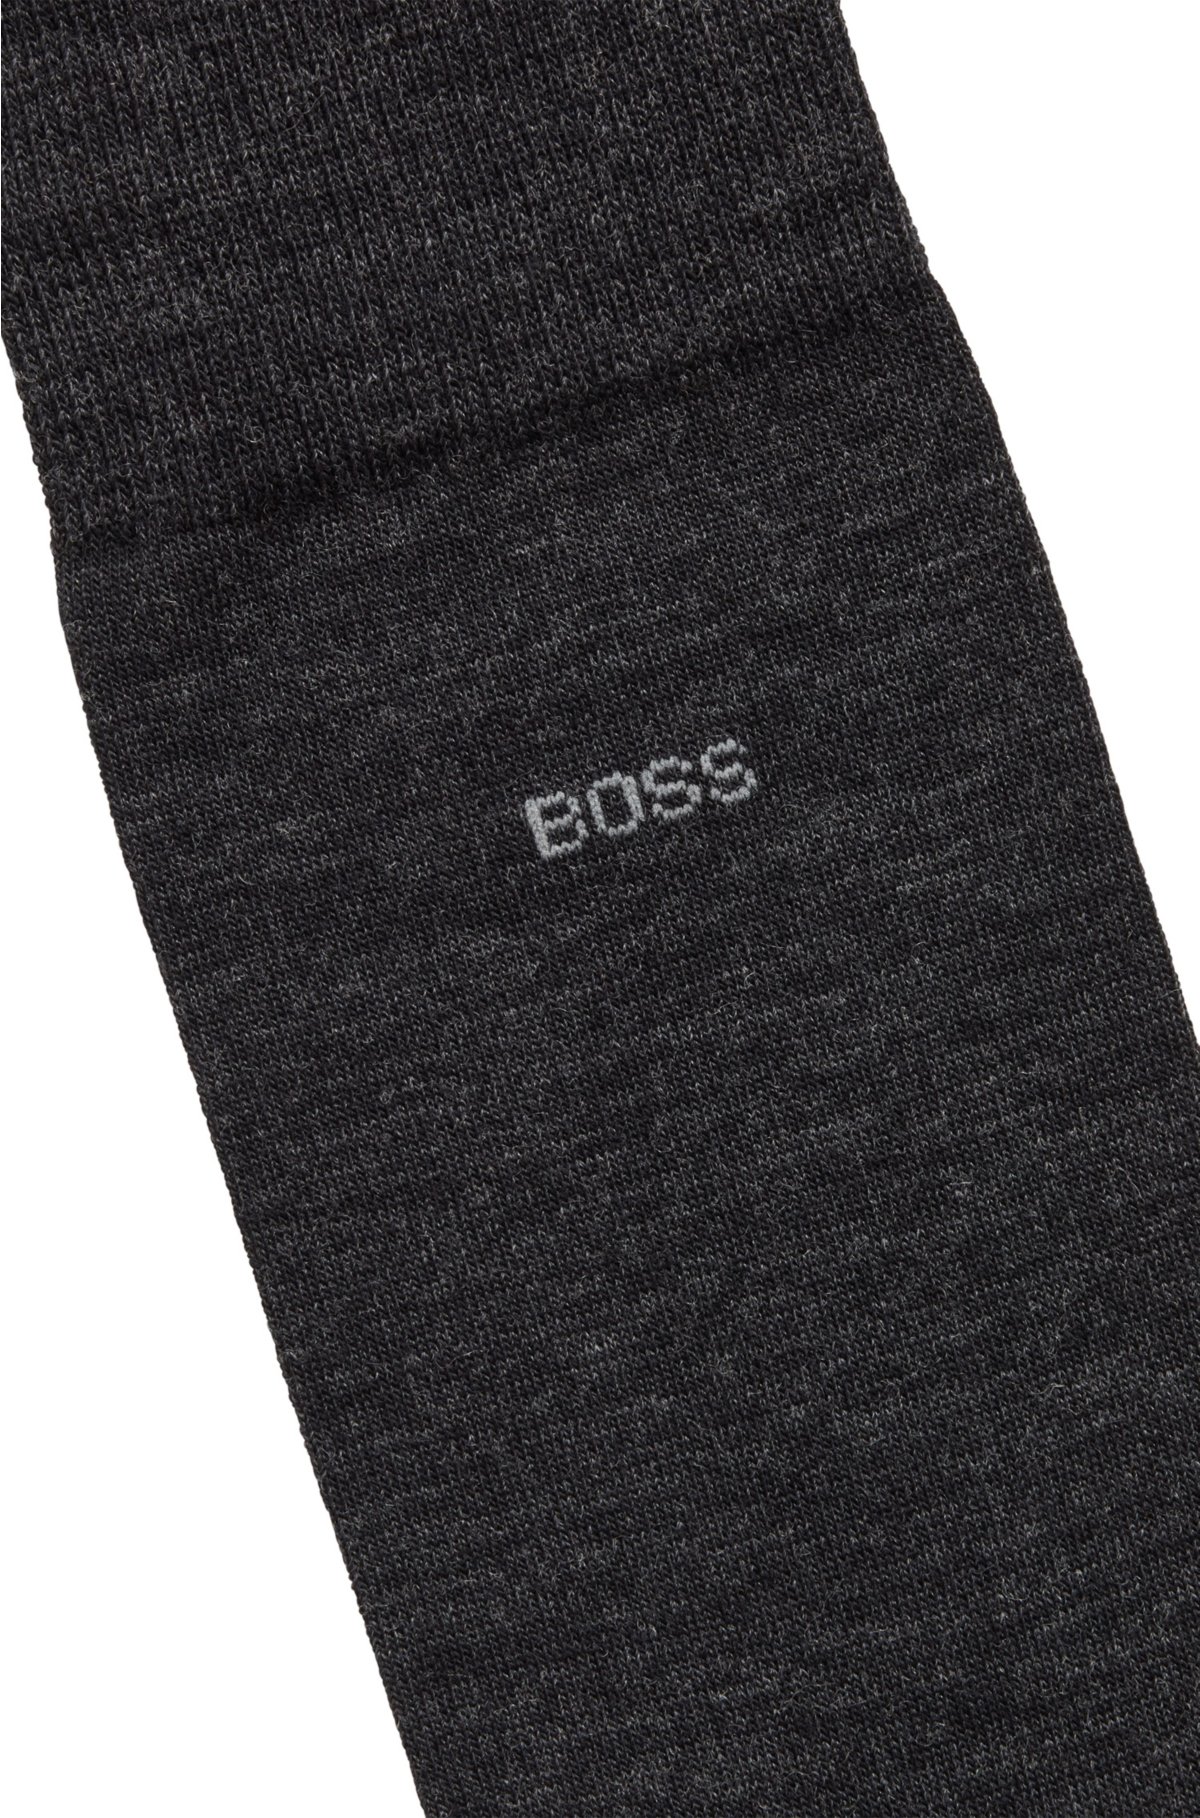 Jeg bærer tøj Opsætning tigger BOSS - Strømper i almindelig længde med logo fremstillet i en uldblanding